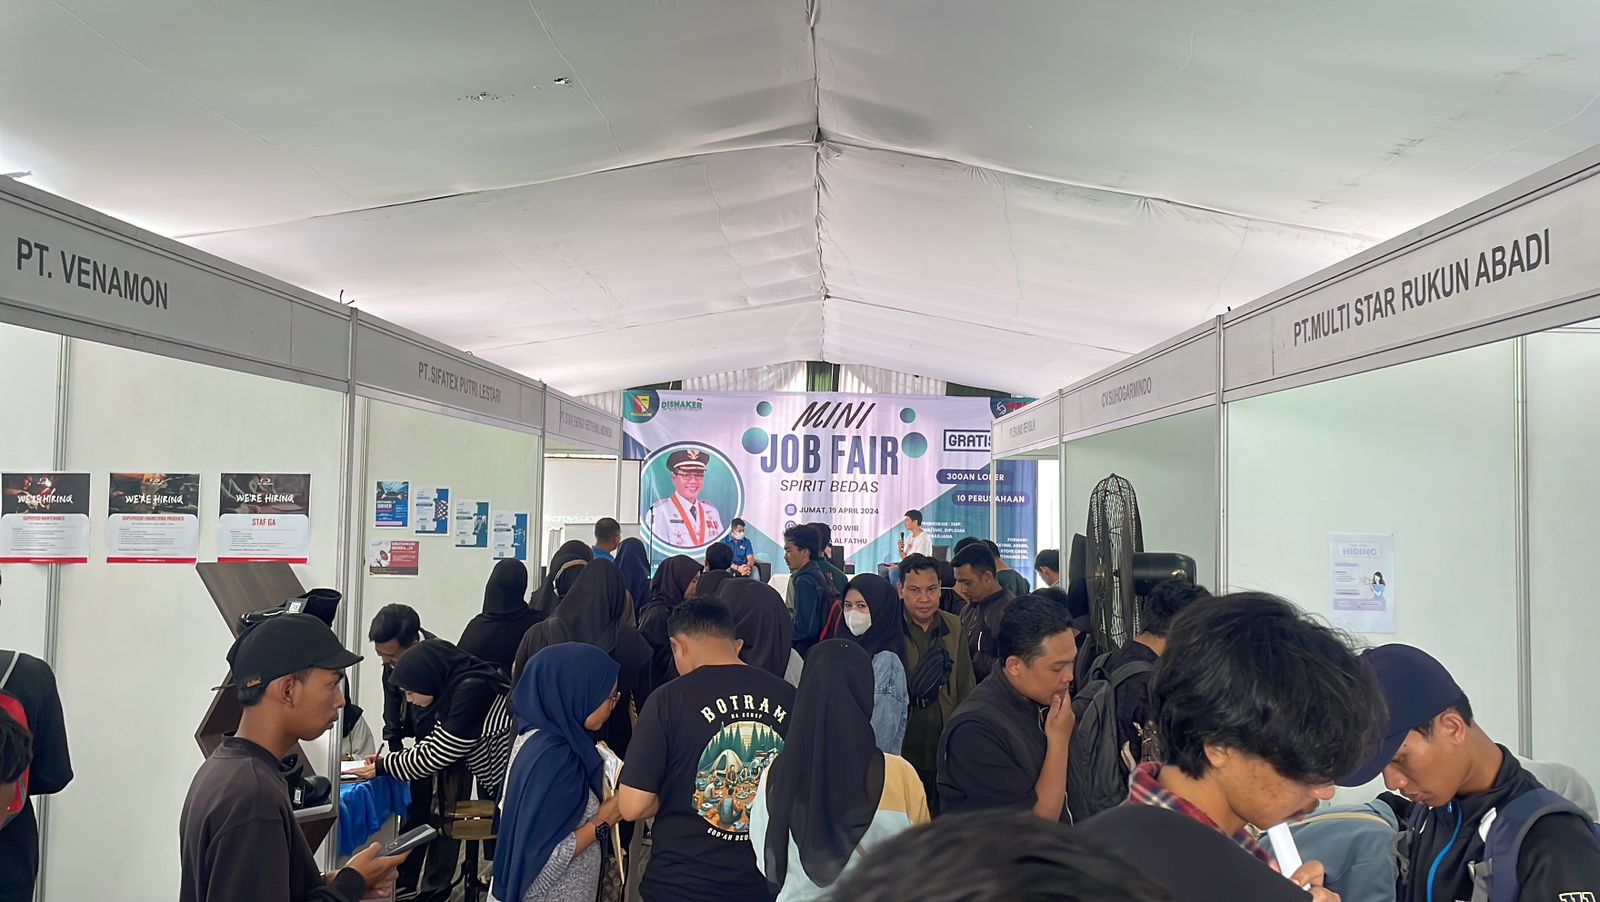 Angka Pengangguran Terus Menurun di Kabupaten Bandung, Disnaker Gelar 8 Kali Job Fair dalam Rangka HUT ke-383